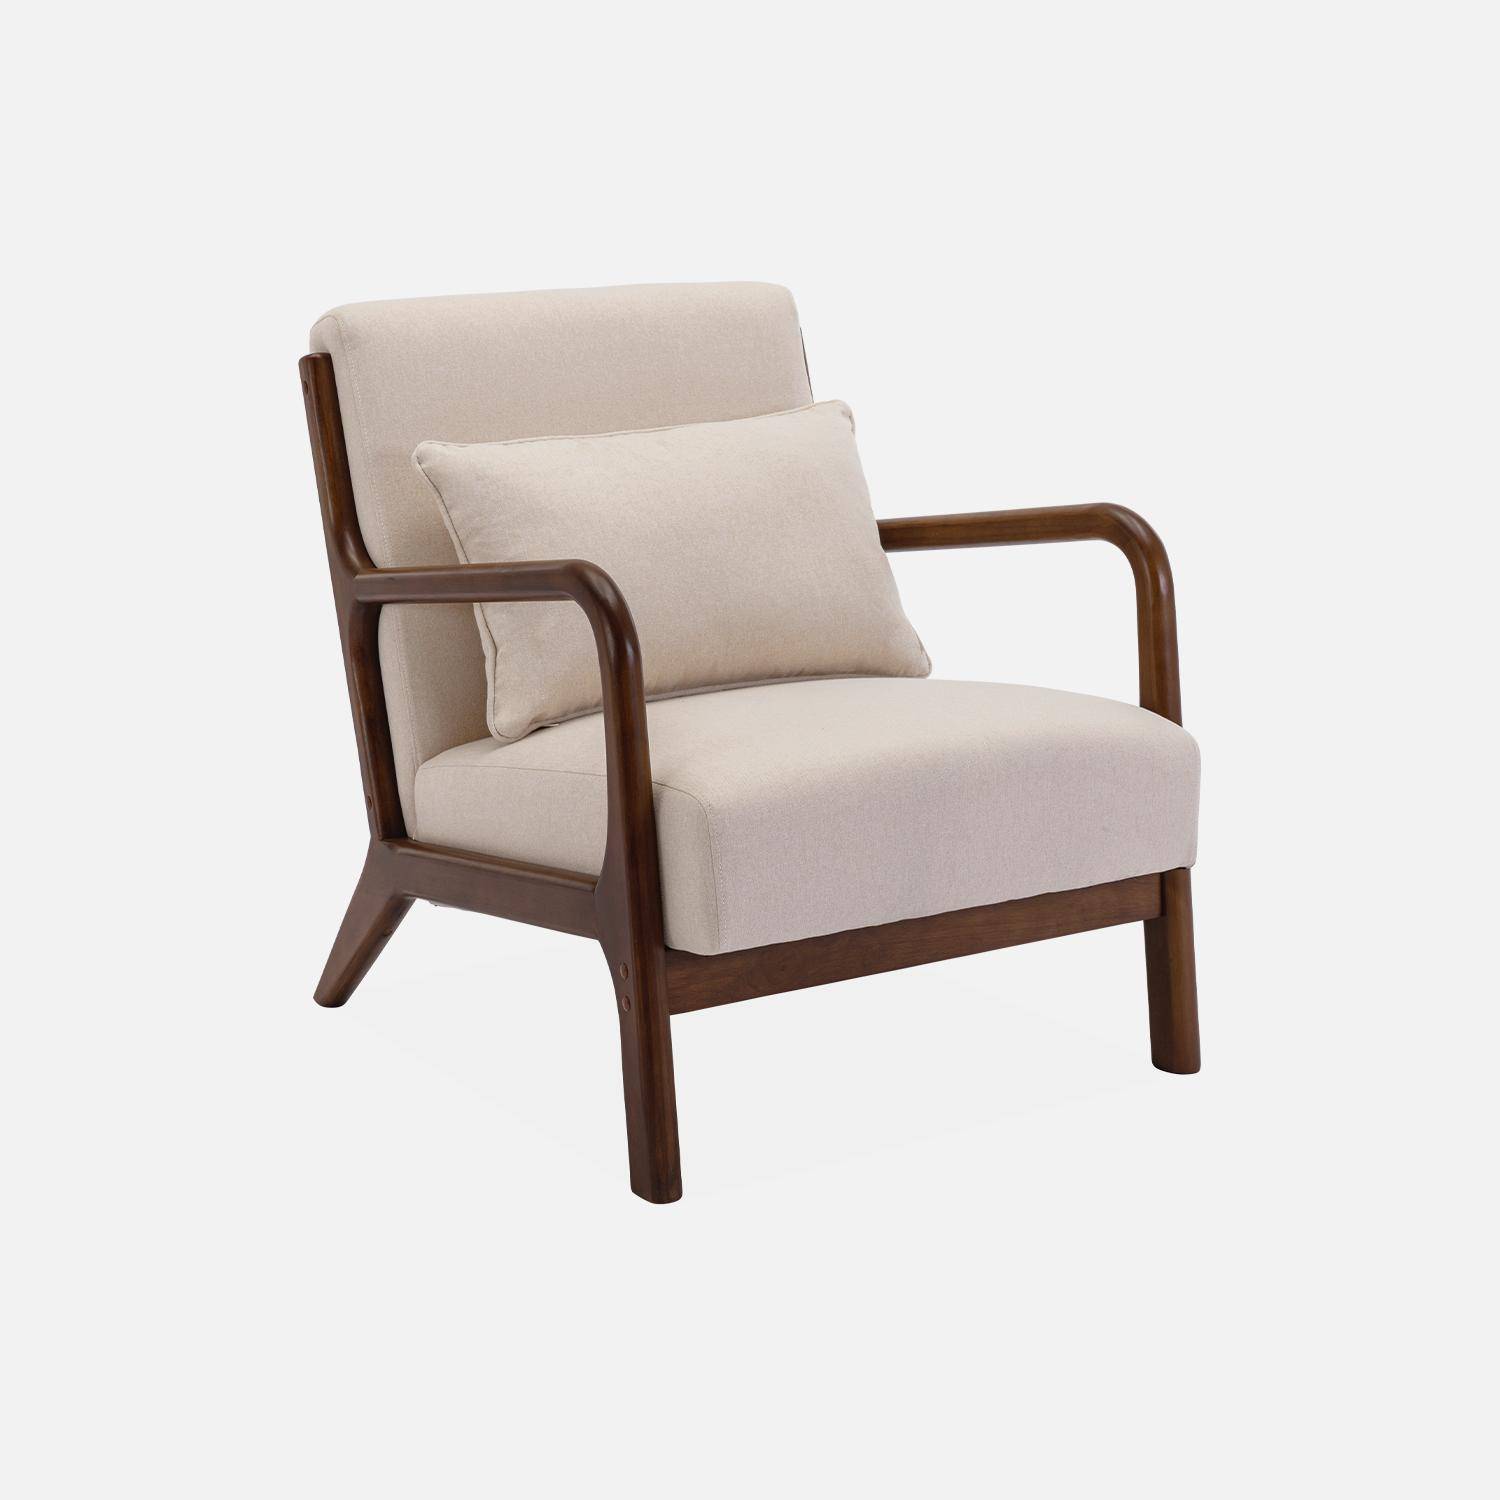 Sessel mit beigem Stoffbezug, Beine aus nussbaumfarbenem Hevea-Holz, 1-sitzig, gerade, fest, skandinavische Zirkelbeine, solides Holzgestell Photo3